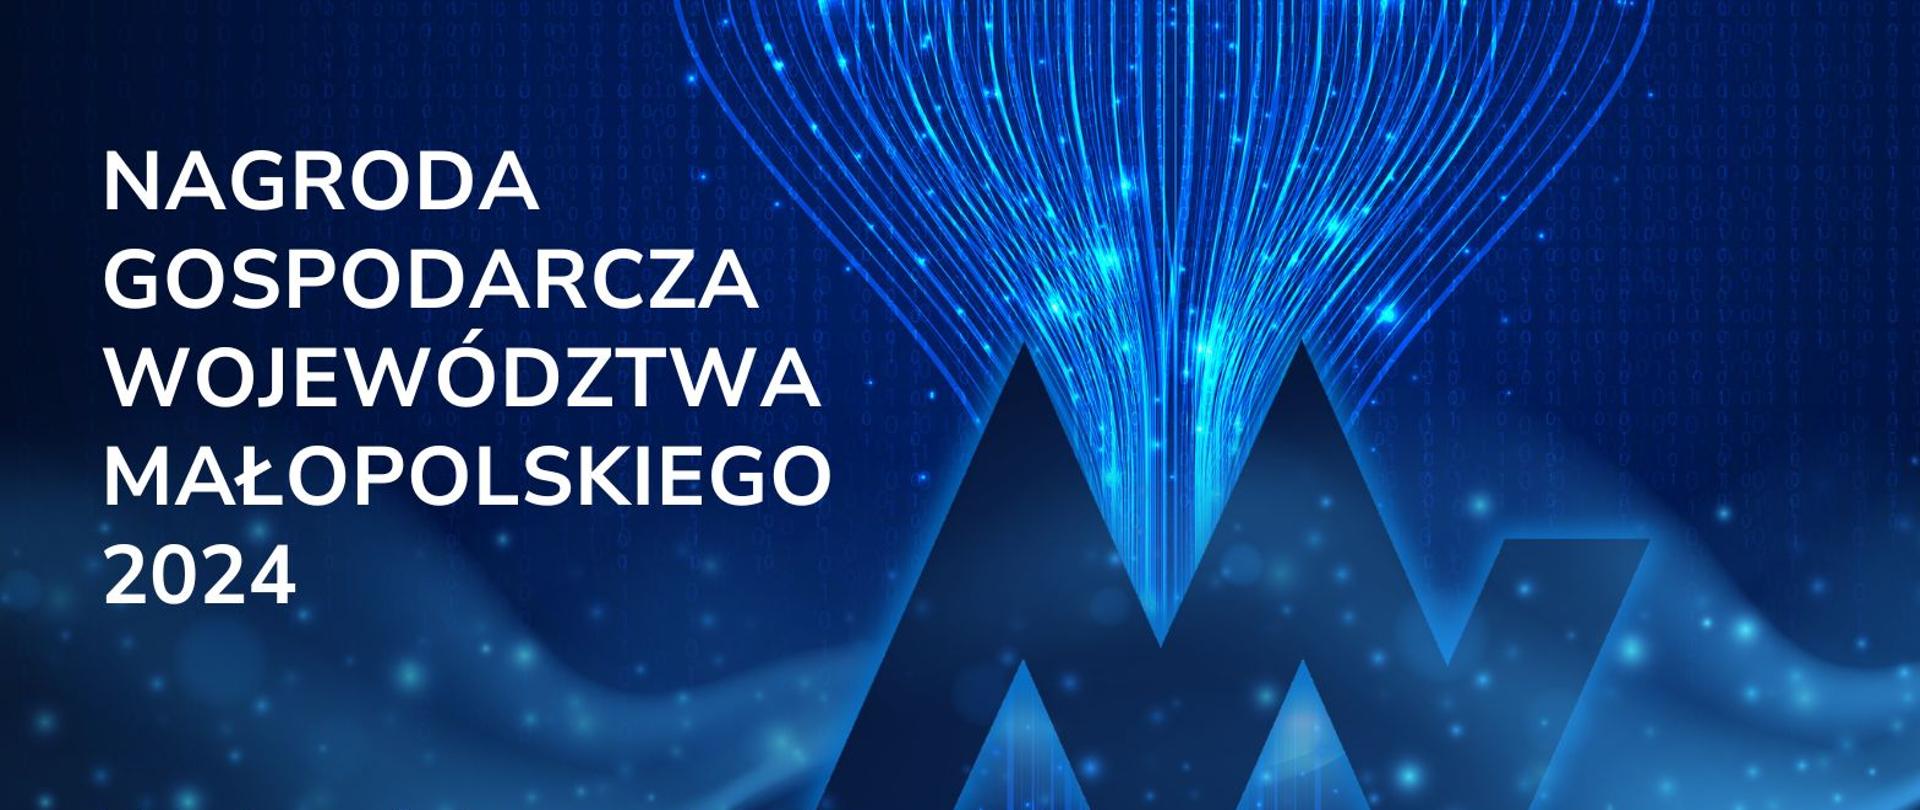 Na rozgwieżdżonym tle logo Województwa Małopolskiego oraz informacja o ogłoszonym naborze do XV edycji Nagrody Gospodarczej Województwa Małopolskiego 